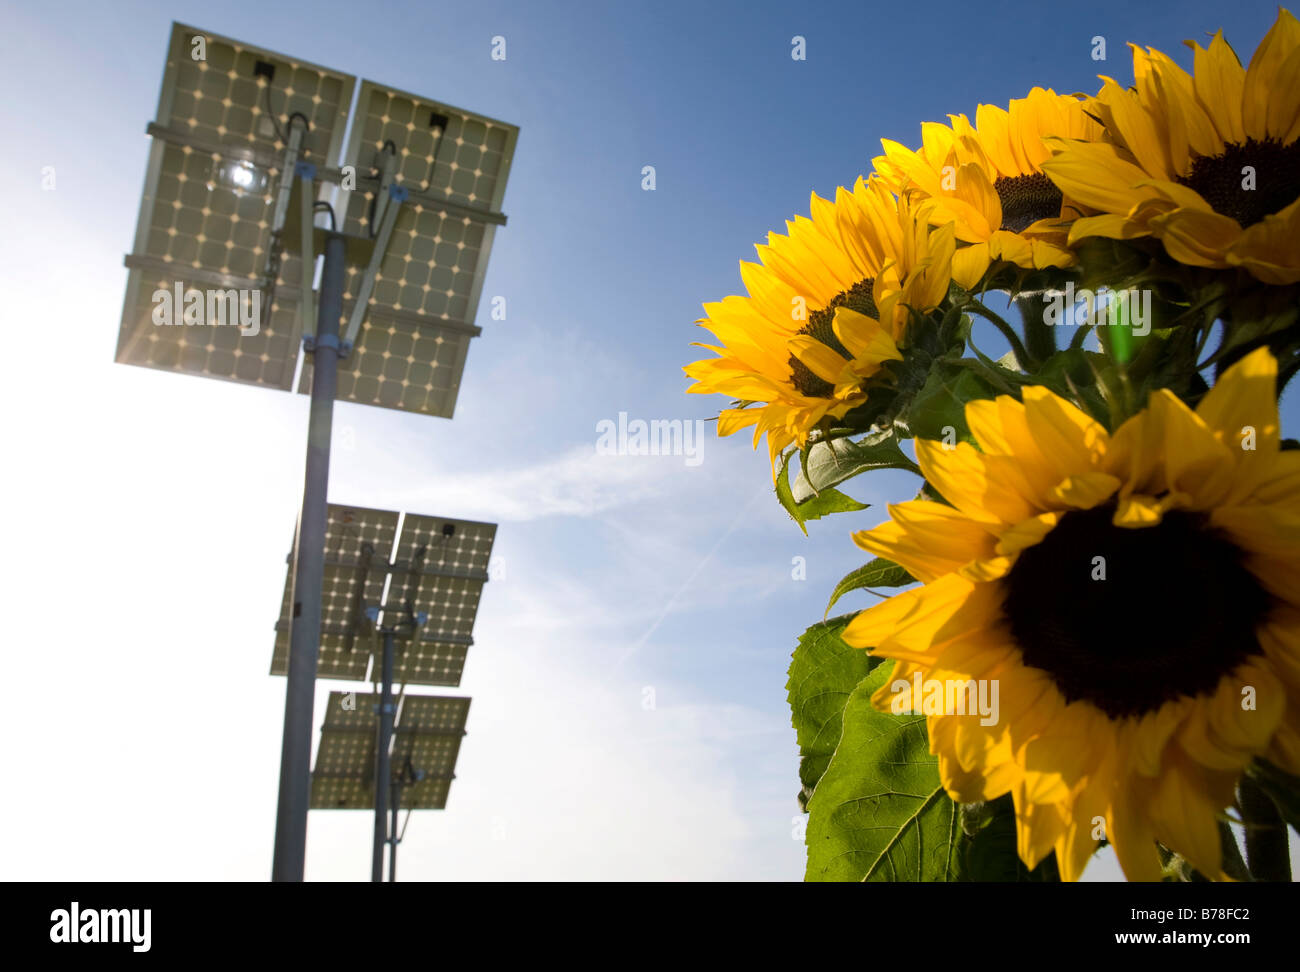 Energía limpia, eco-energía a partir de fuentes de energía renovables, girasoles, en segundo plano los colectores solares, paneles solares, ganando energía solar, Hess Foto de stock